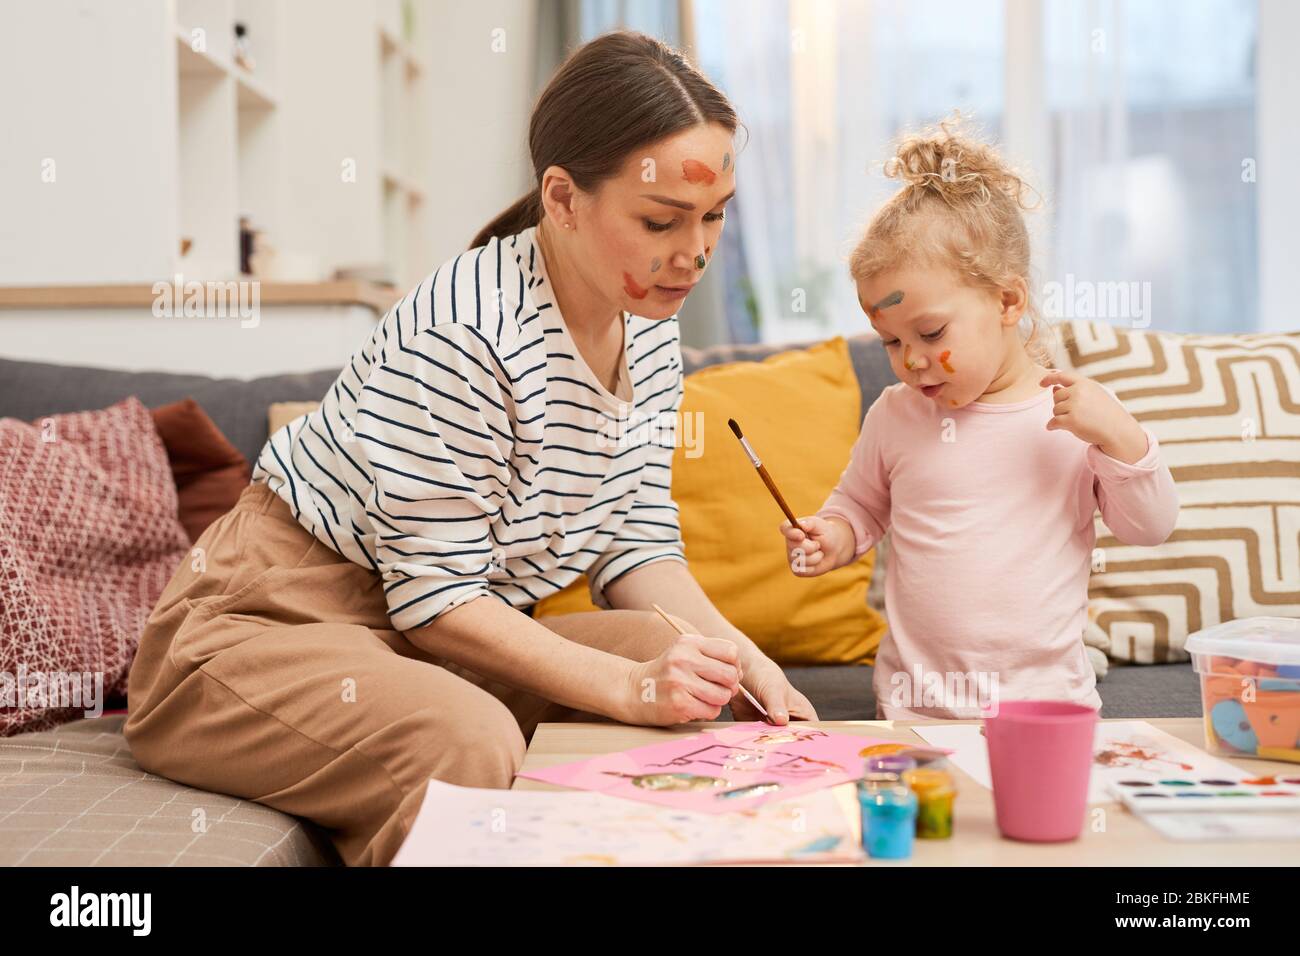 Belle jeune femme passer du temps libre avec sa petite fille peindre des images colorées ensemble Banque D'Images